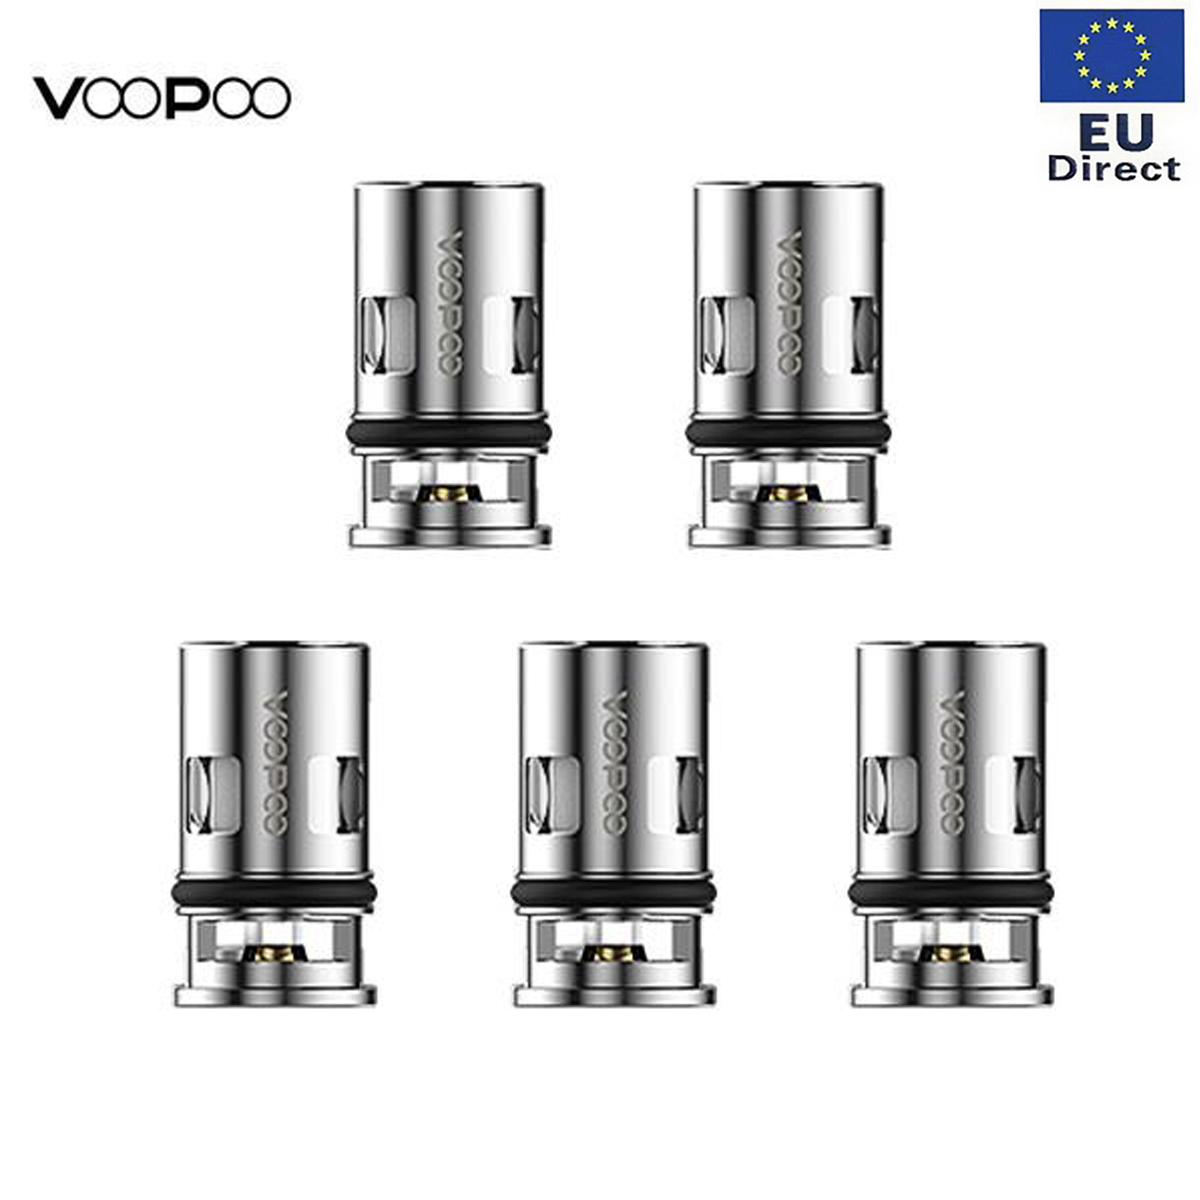 [EU]Authentic VOOPOO PnP-VM5 coil head 0.2ohm x 5